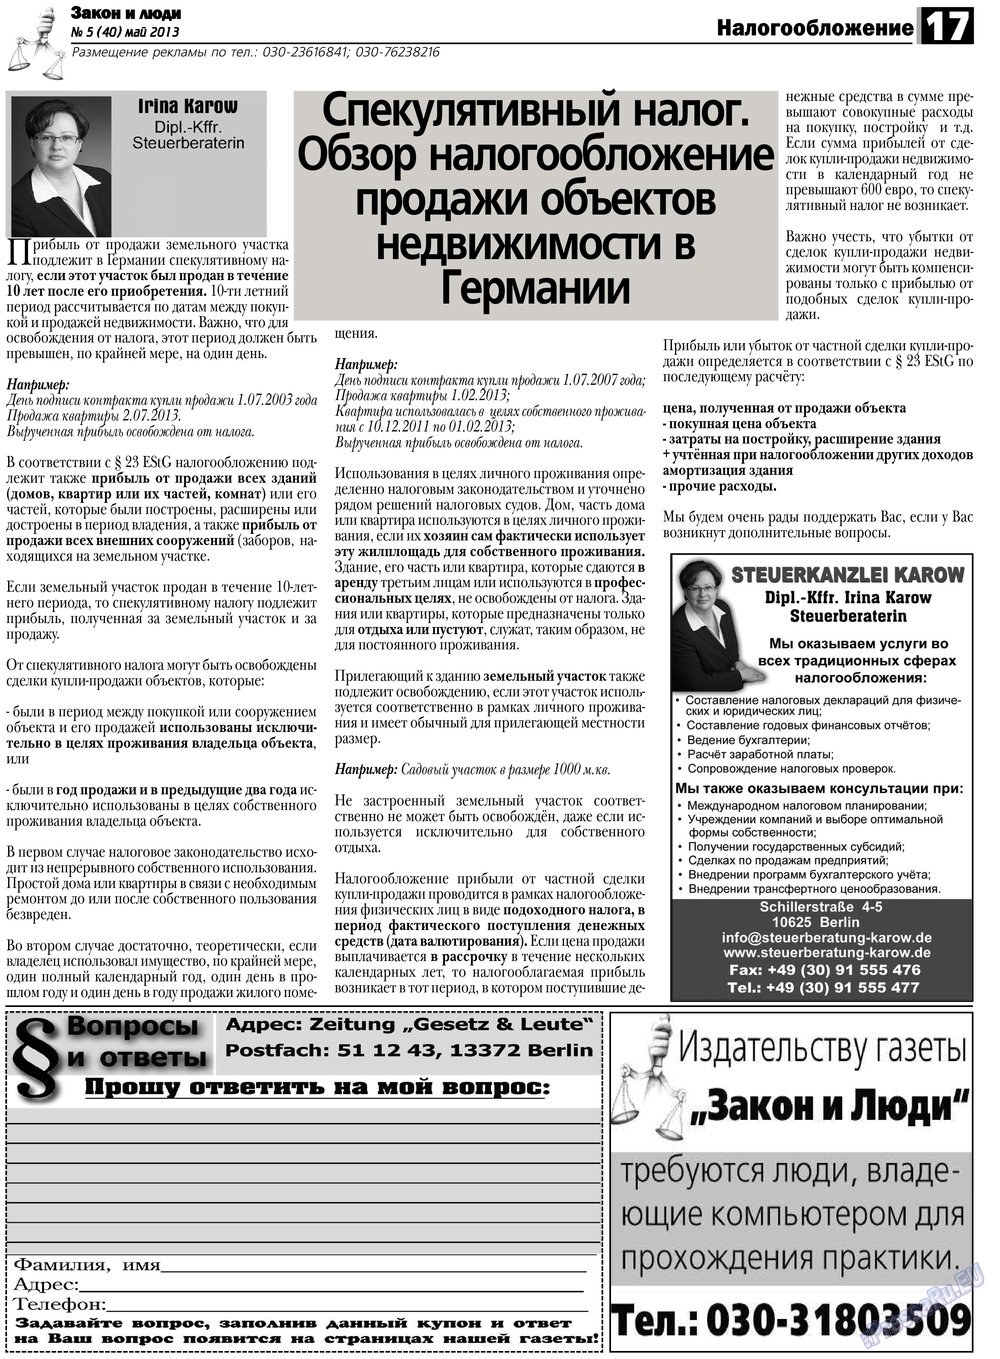 Закон и люди, газета. 2013 №5 стр.17